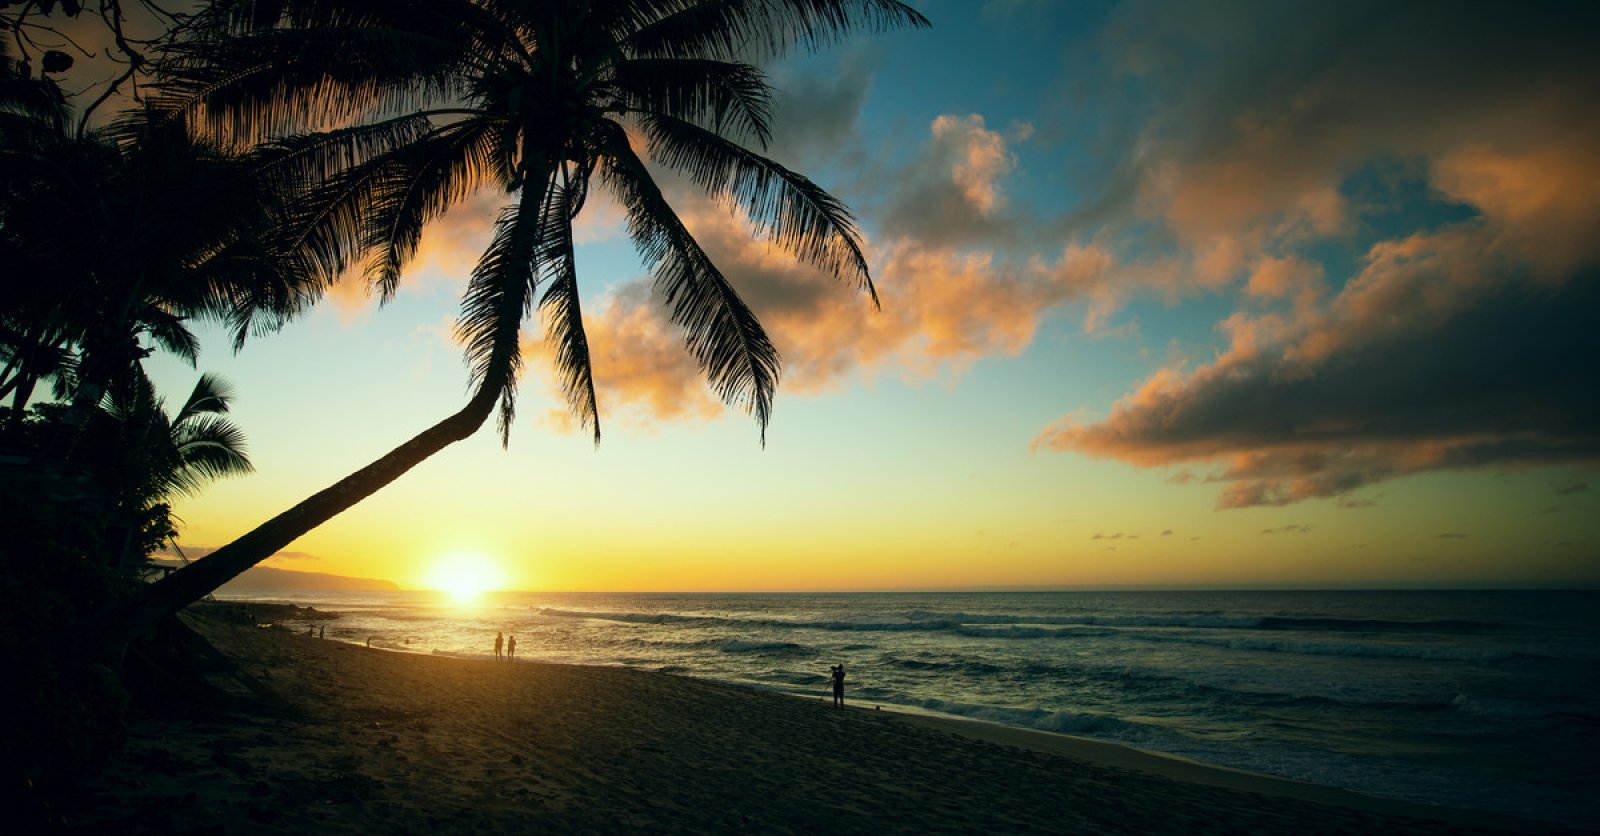 Sunset Beach Information, Activities & Amenities | Oahu Hawaii